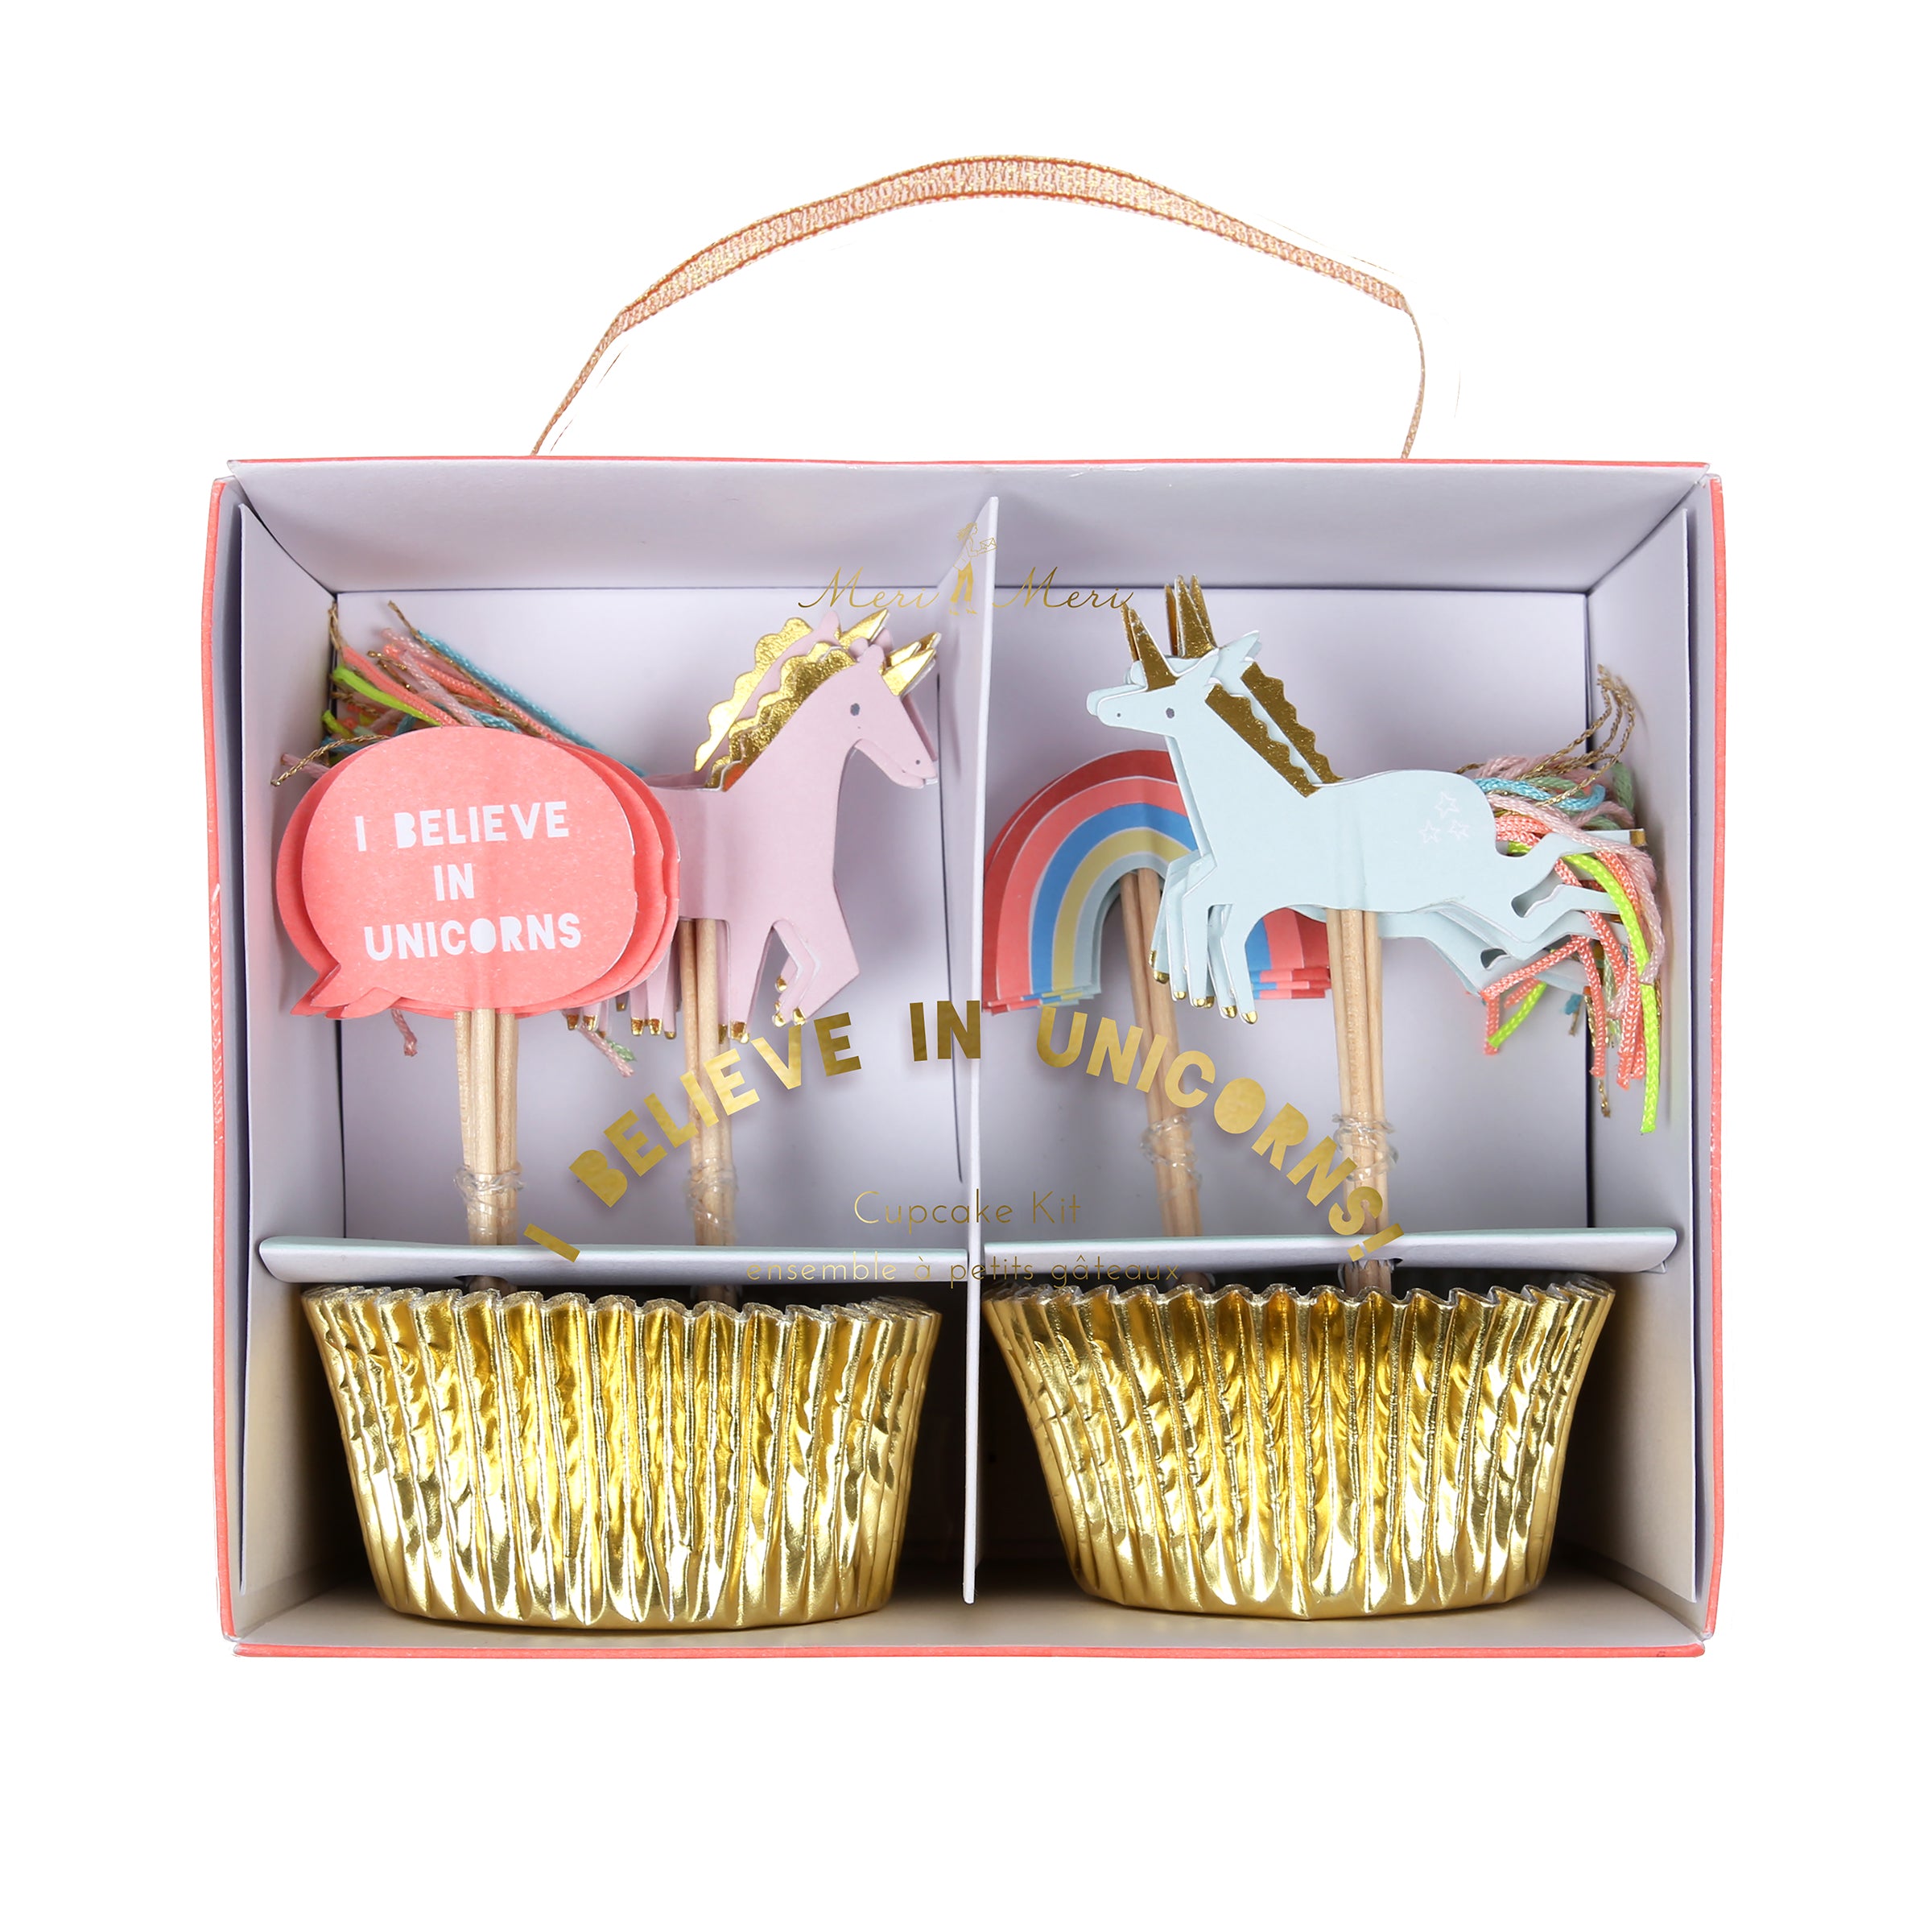 Cupcake Kit I Believe in Unicorns Meri Meri